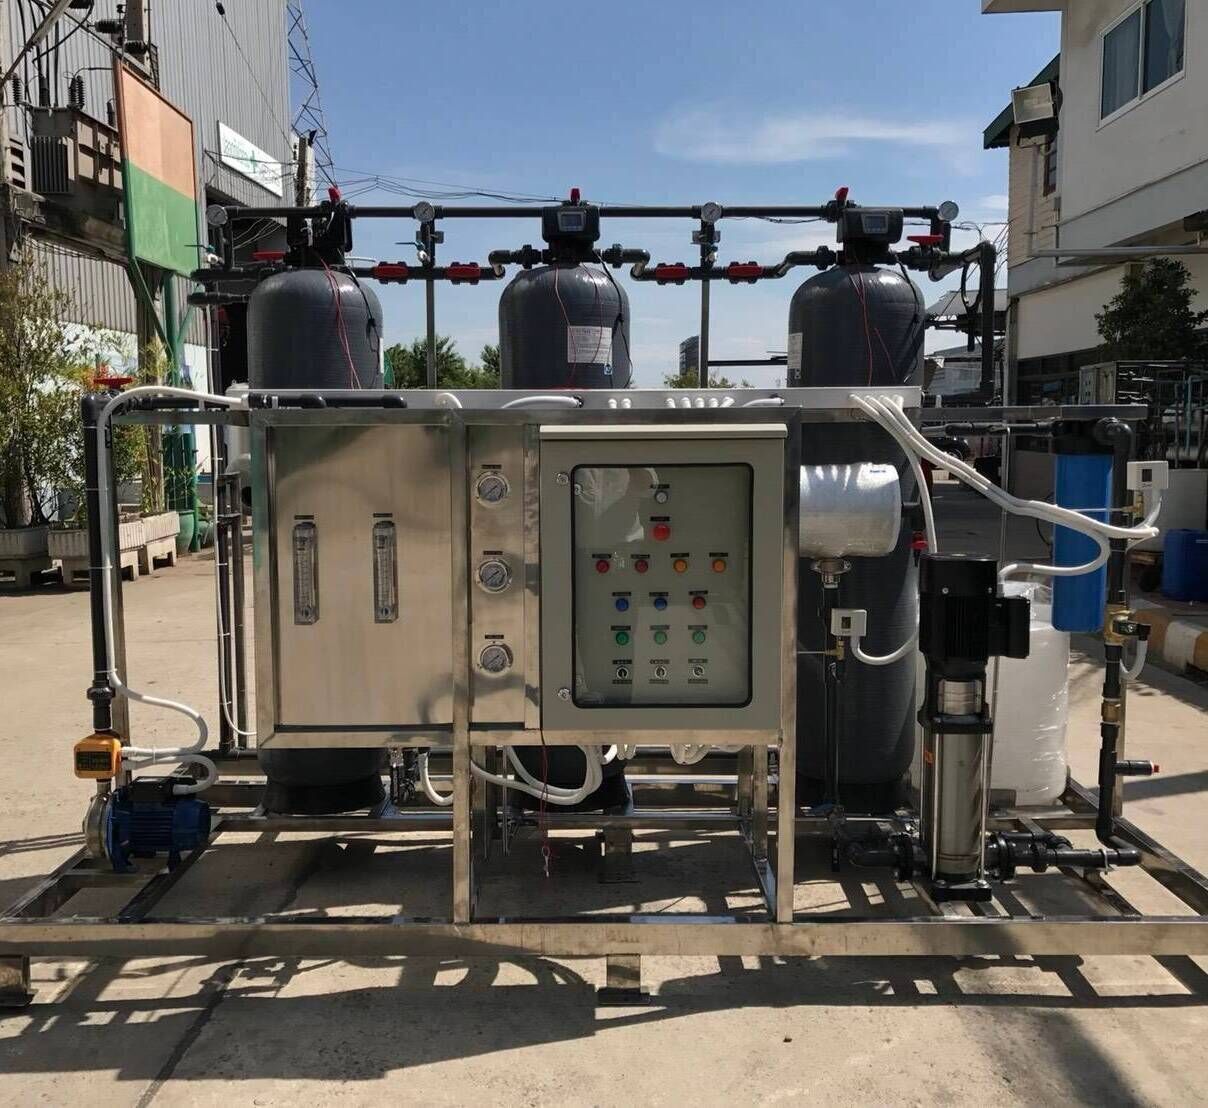 เครื่องกรองน้ำ RO พร้อมระบบ SOFTENER เครื่องกรองน้ำอุตสาหกรรม RO เครื่องกรองน้ำอุตสาหกรรม RO ระบบกรองน้ำโรงงาน เครื่องกรองน้ำใช้ในโรงงาน